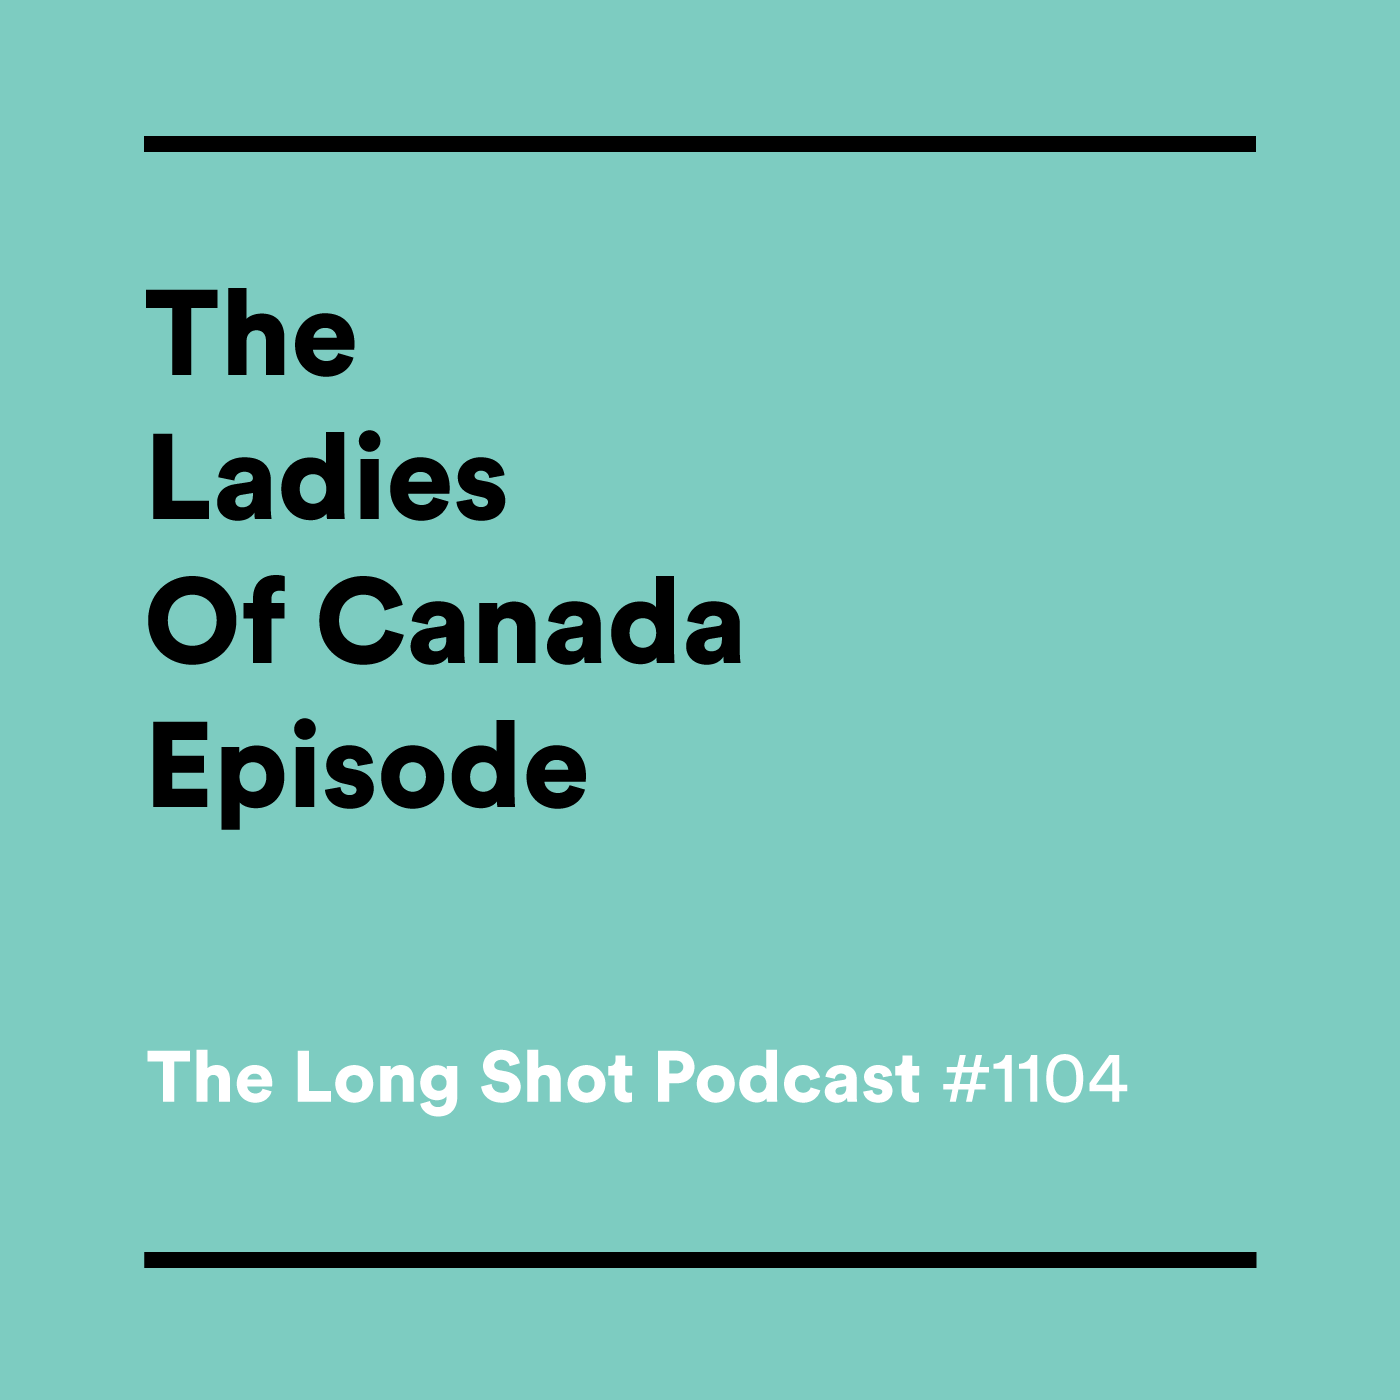 #1104 The Ladies of Canada Episode